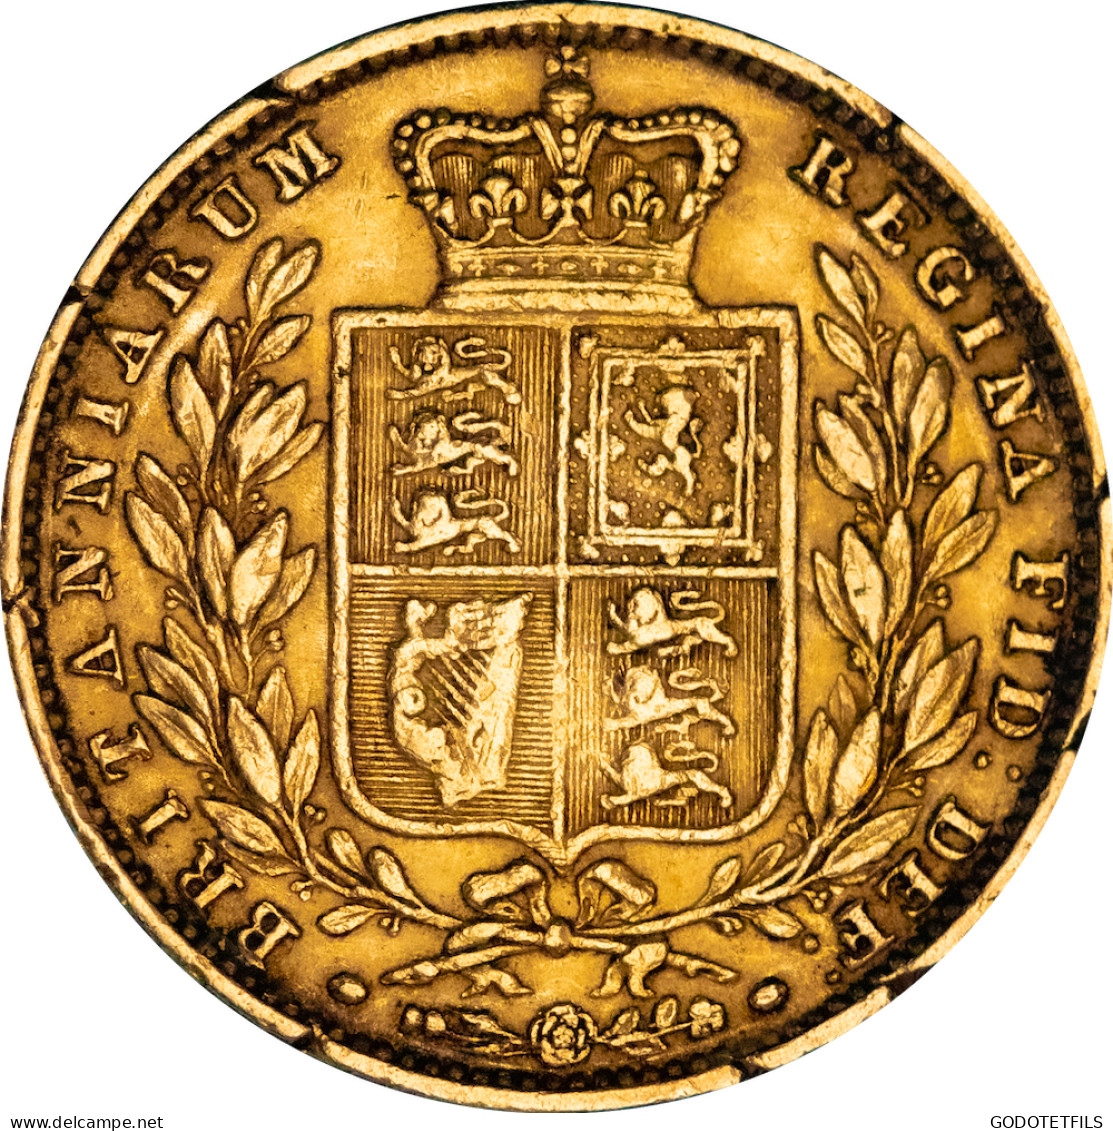 Royaume Uni - Souverain Victoria 1855 - 1 Sovereign